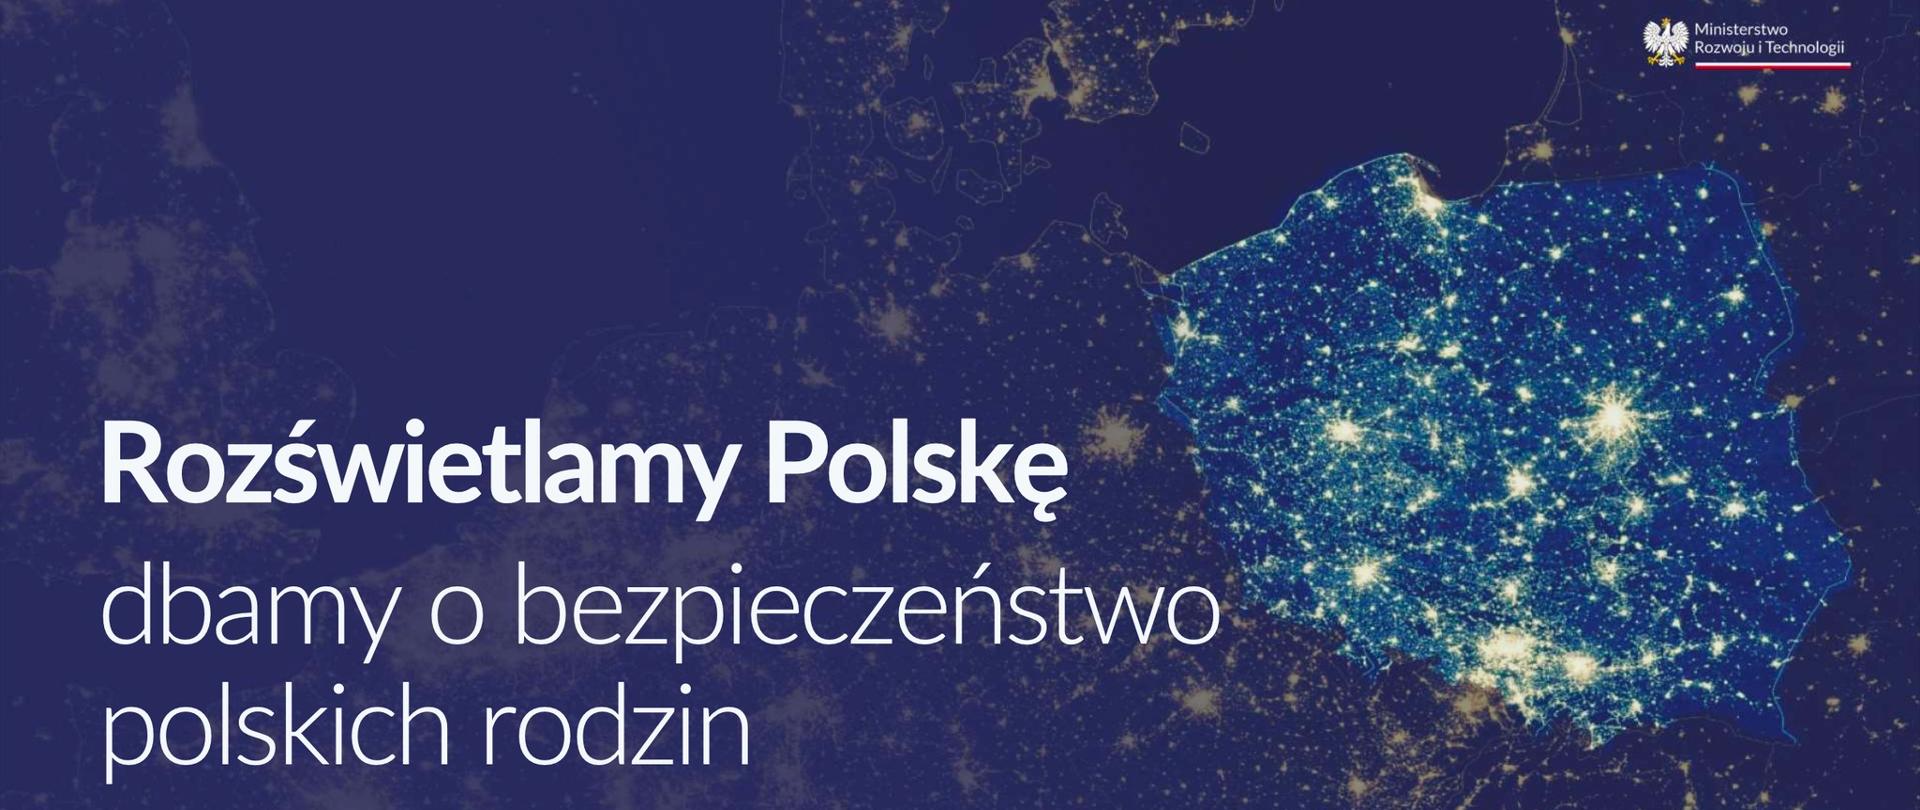 Rozświetlamy Polskę 